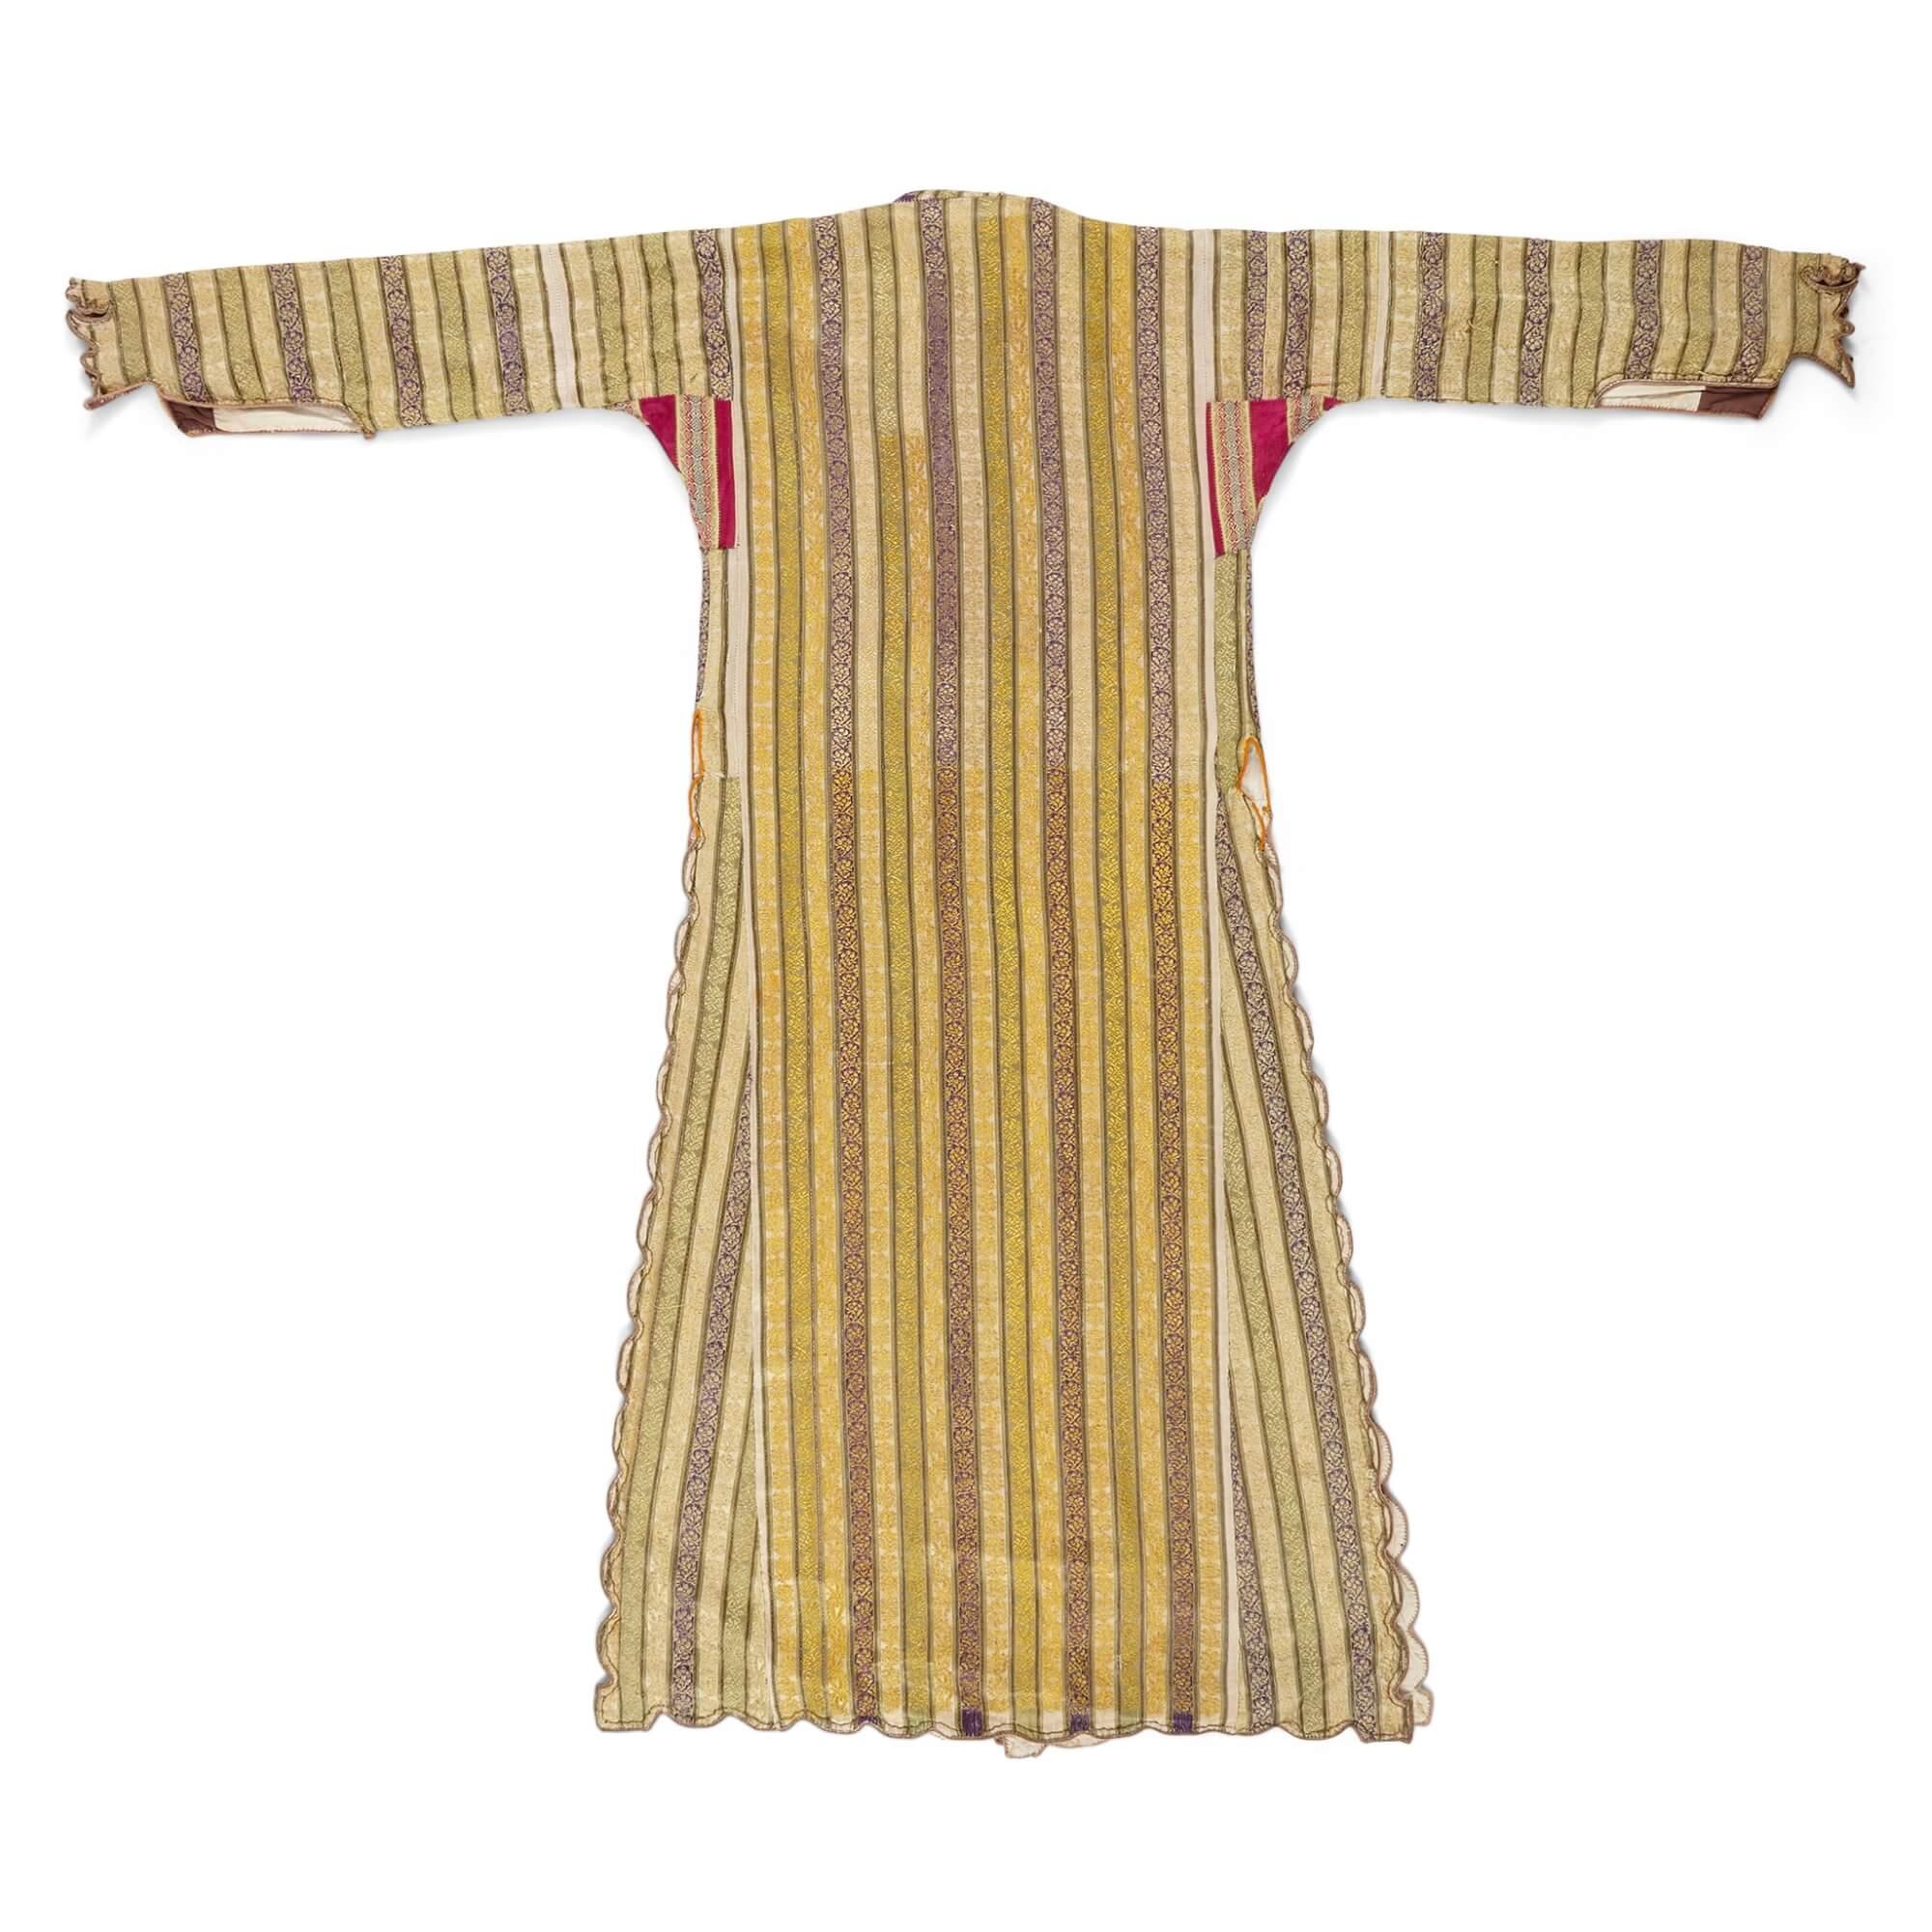 Türkischer Kaftan aus der osmanischen Zeit des 19.
Höhe 136cm, Breite 159cm

Dieser antike Kaftan stammt aus der osmanischen Periode in der Türkei während des 19. Jahrhunderts und ist eine hervorragende Ergänzung zu einer Sammlung antiker Kleidung